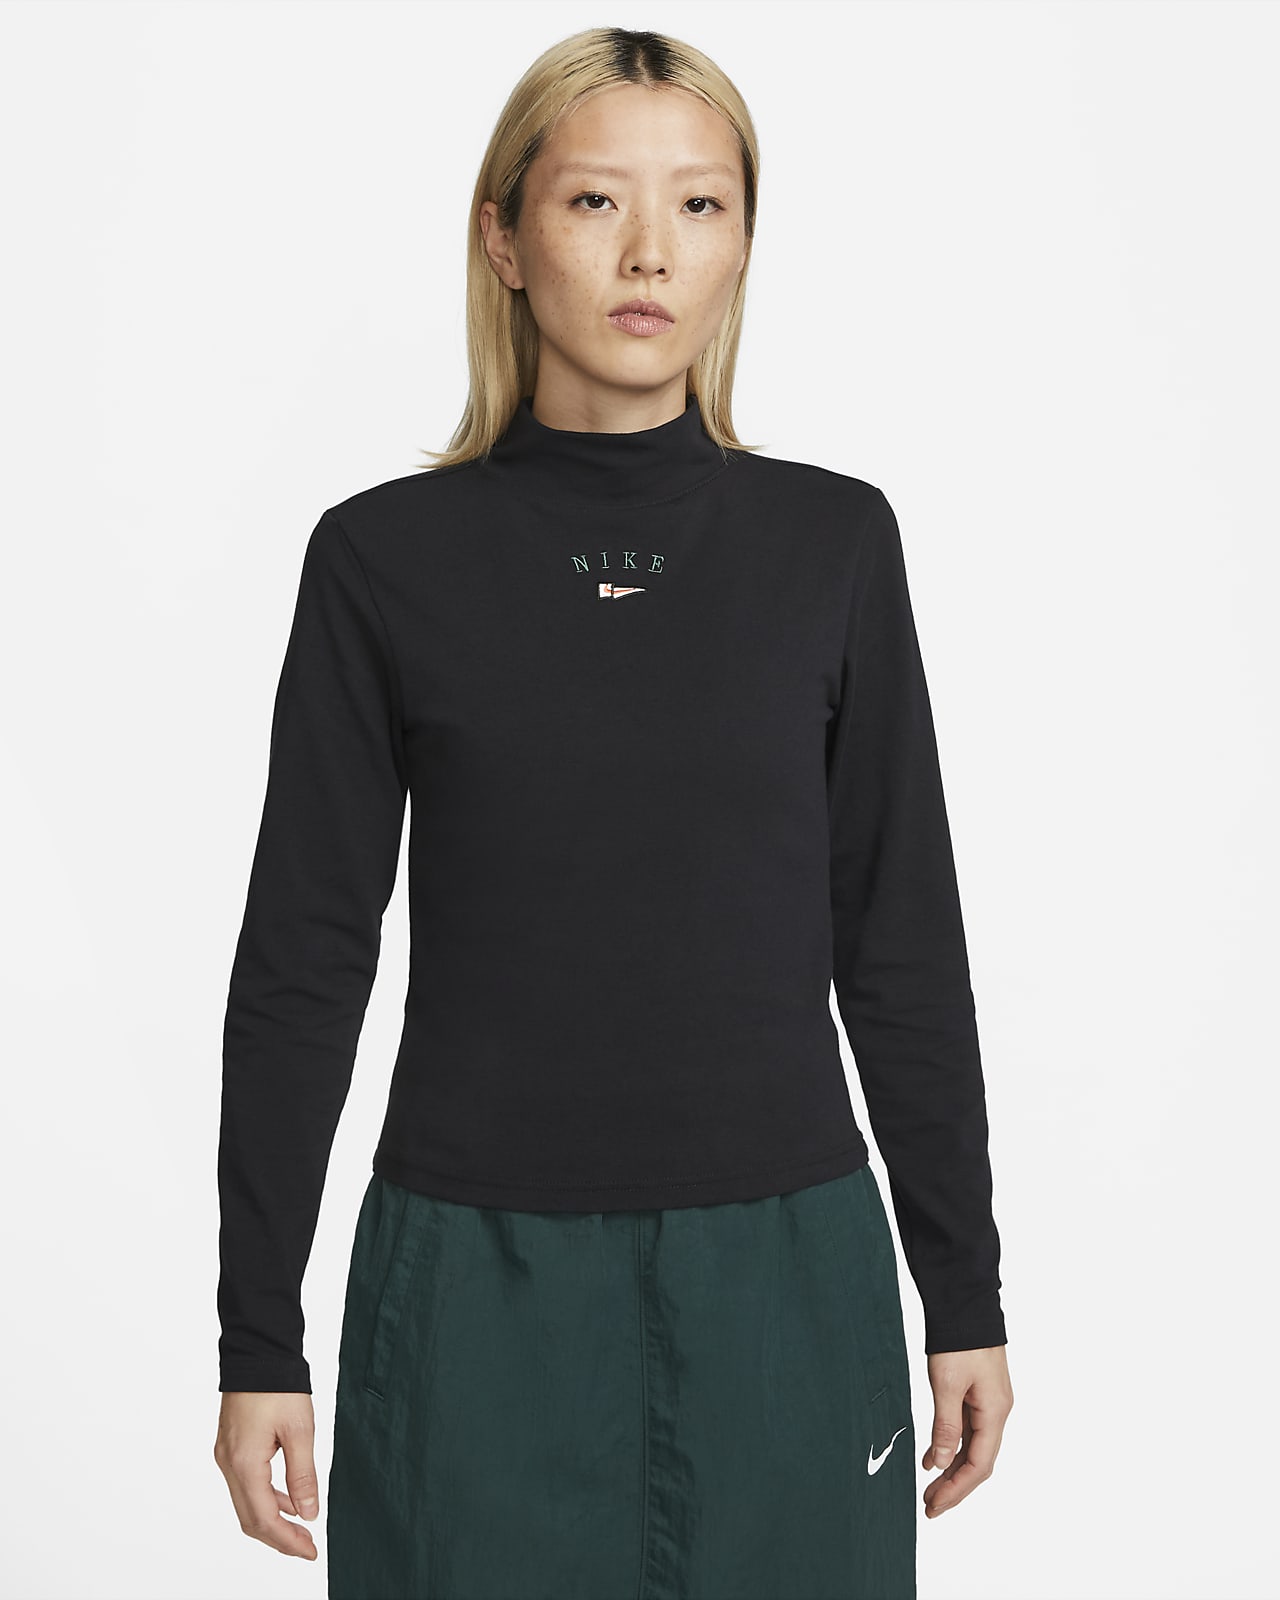 Nike Sportswear Women's Long-Sleeve Mock-Neck Top